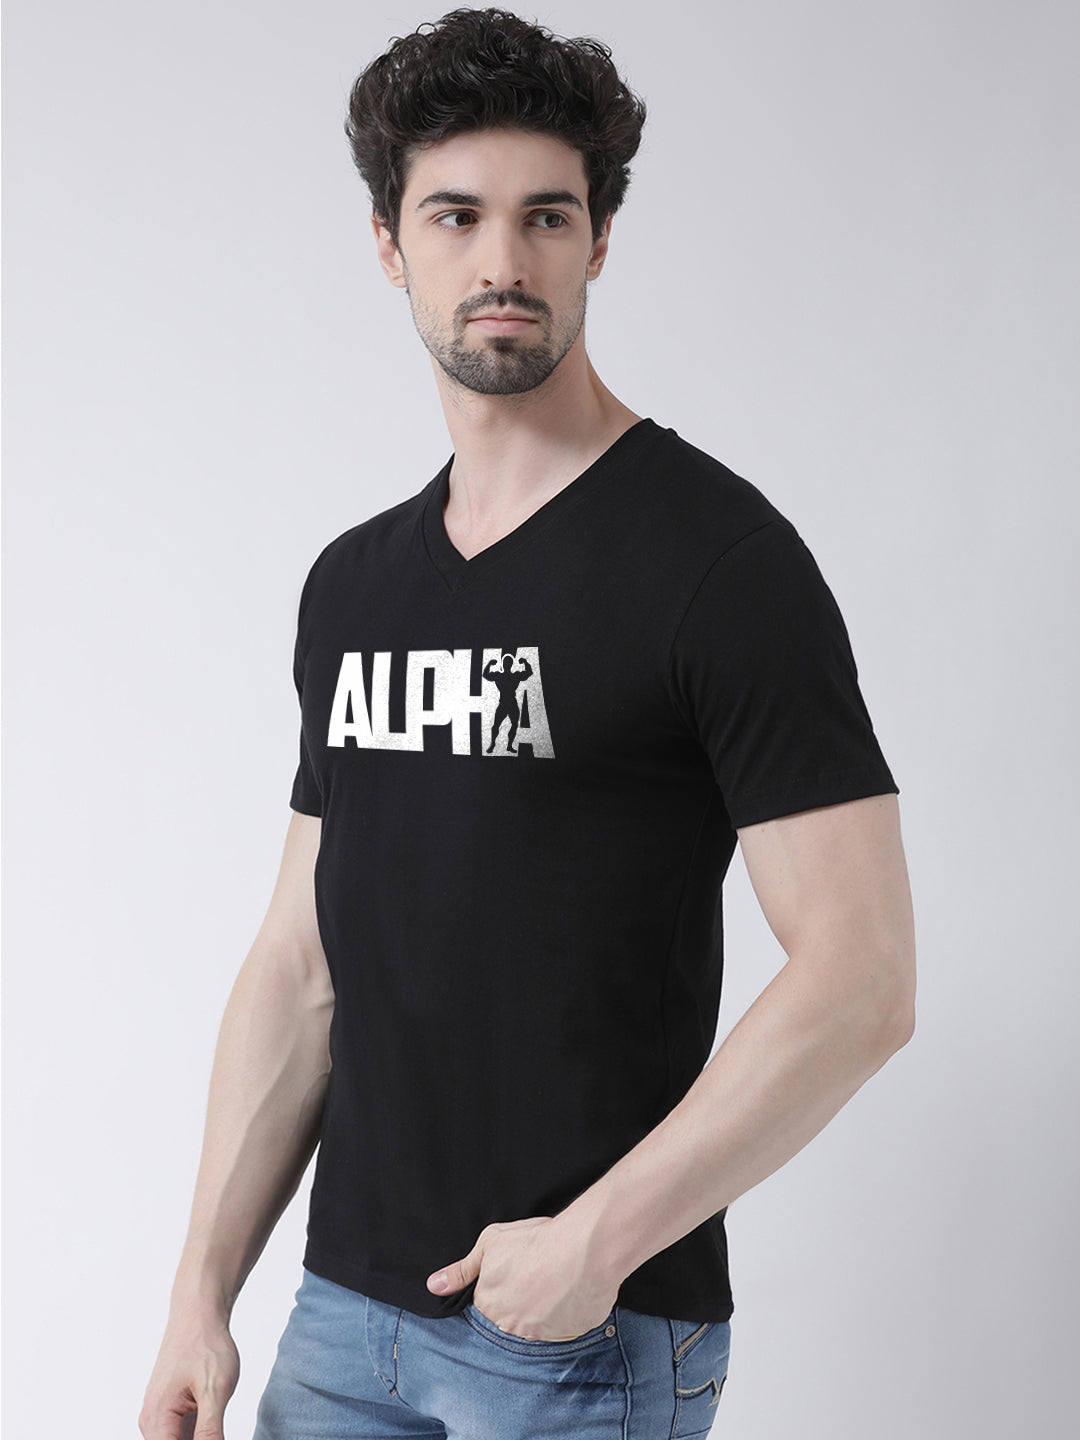 Men V-Neck Alpha Printed Cotton Half Sleeve T-shirt - Friskers